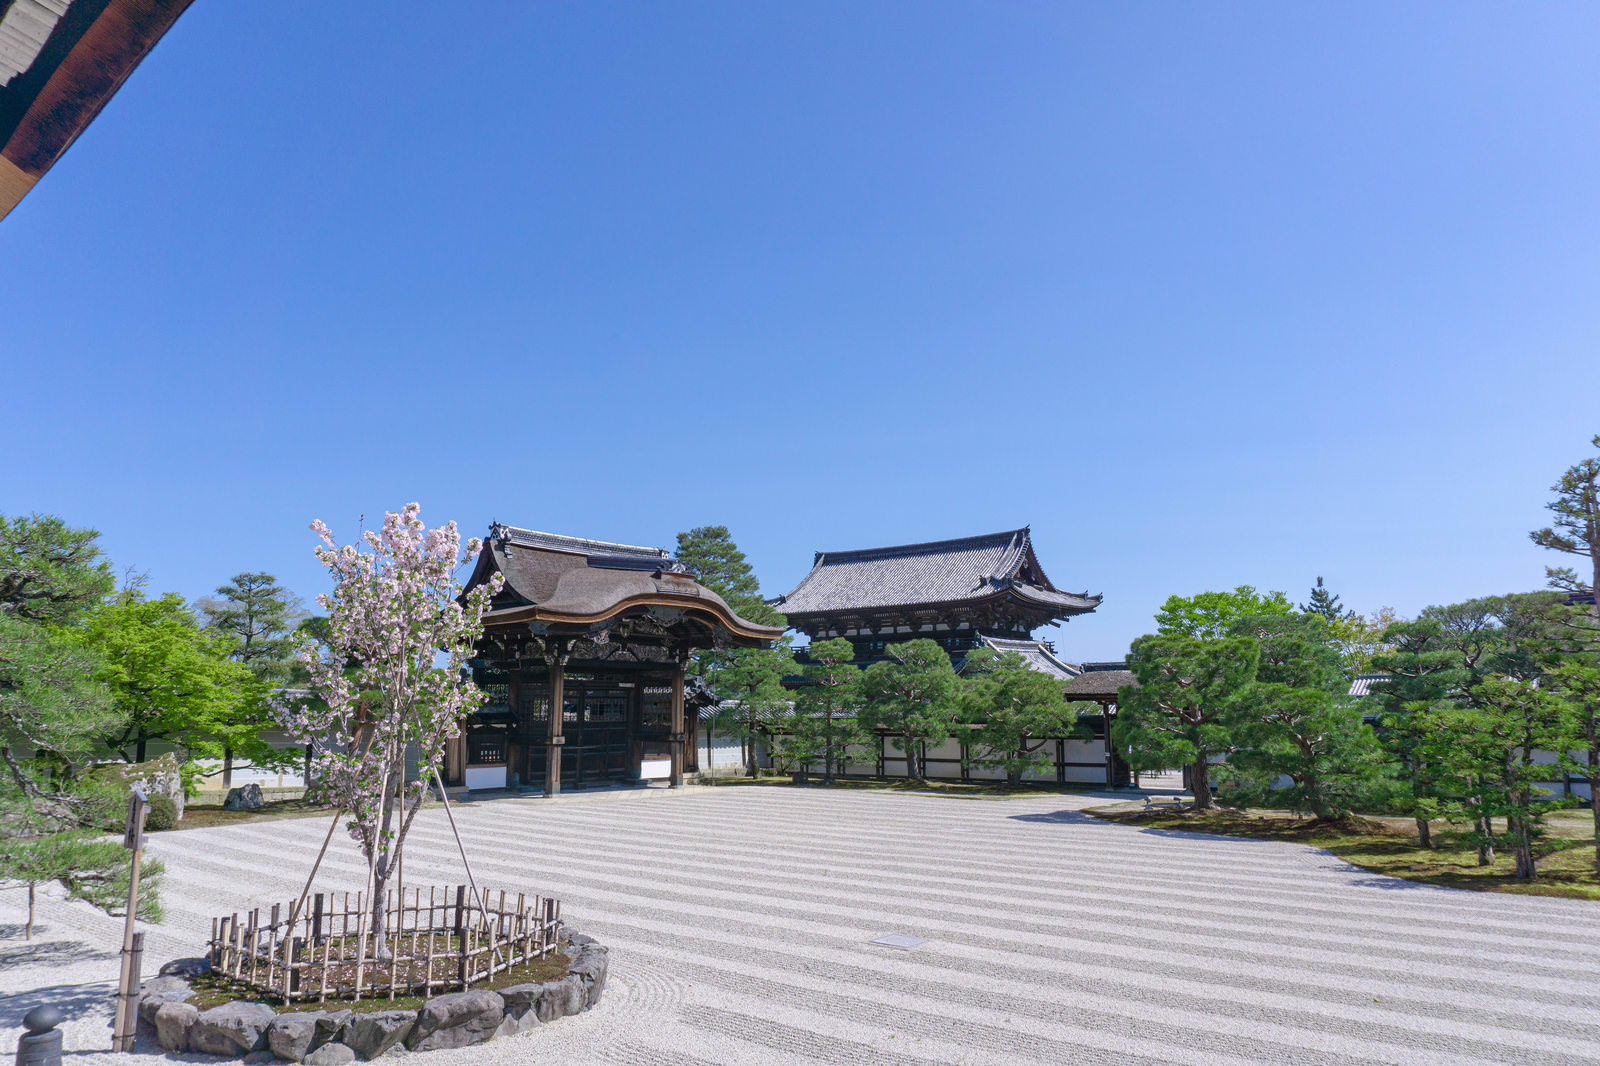 「白砂が広がる仁和寺の南庭（なんてい）に立つ左近の桜 | フリー素材のぱくたそ」の写真